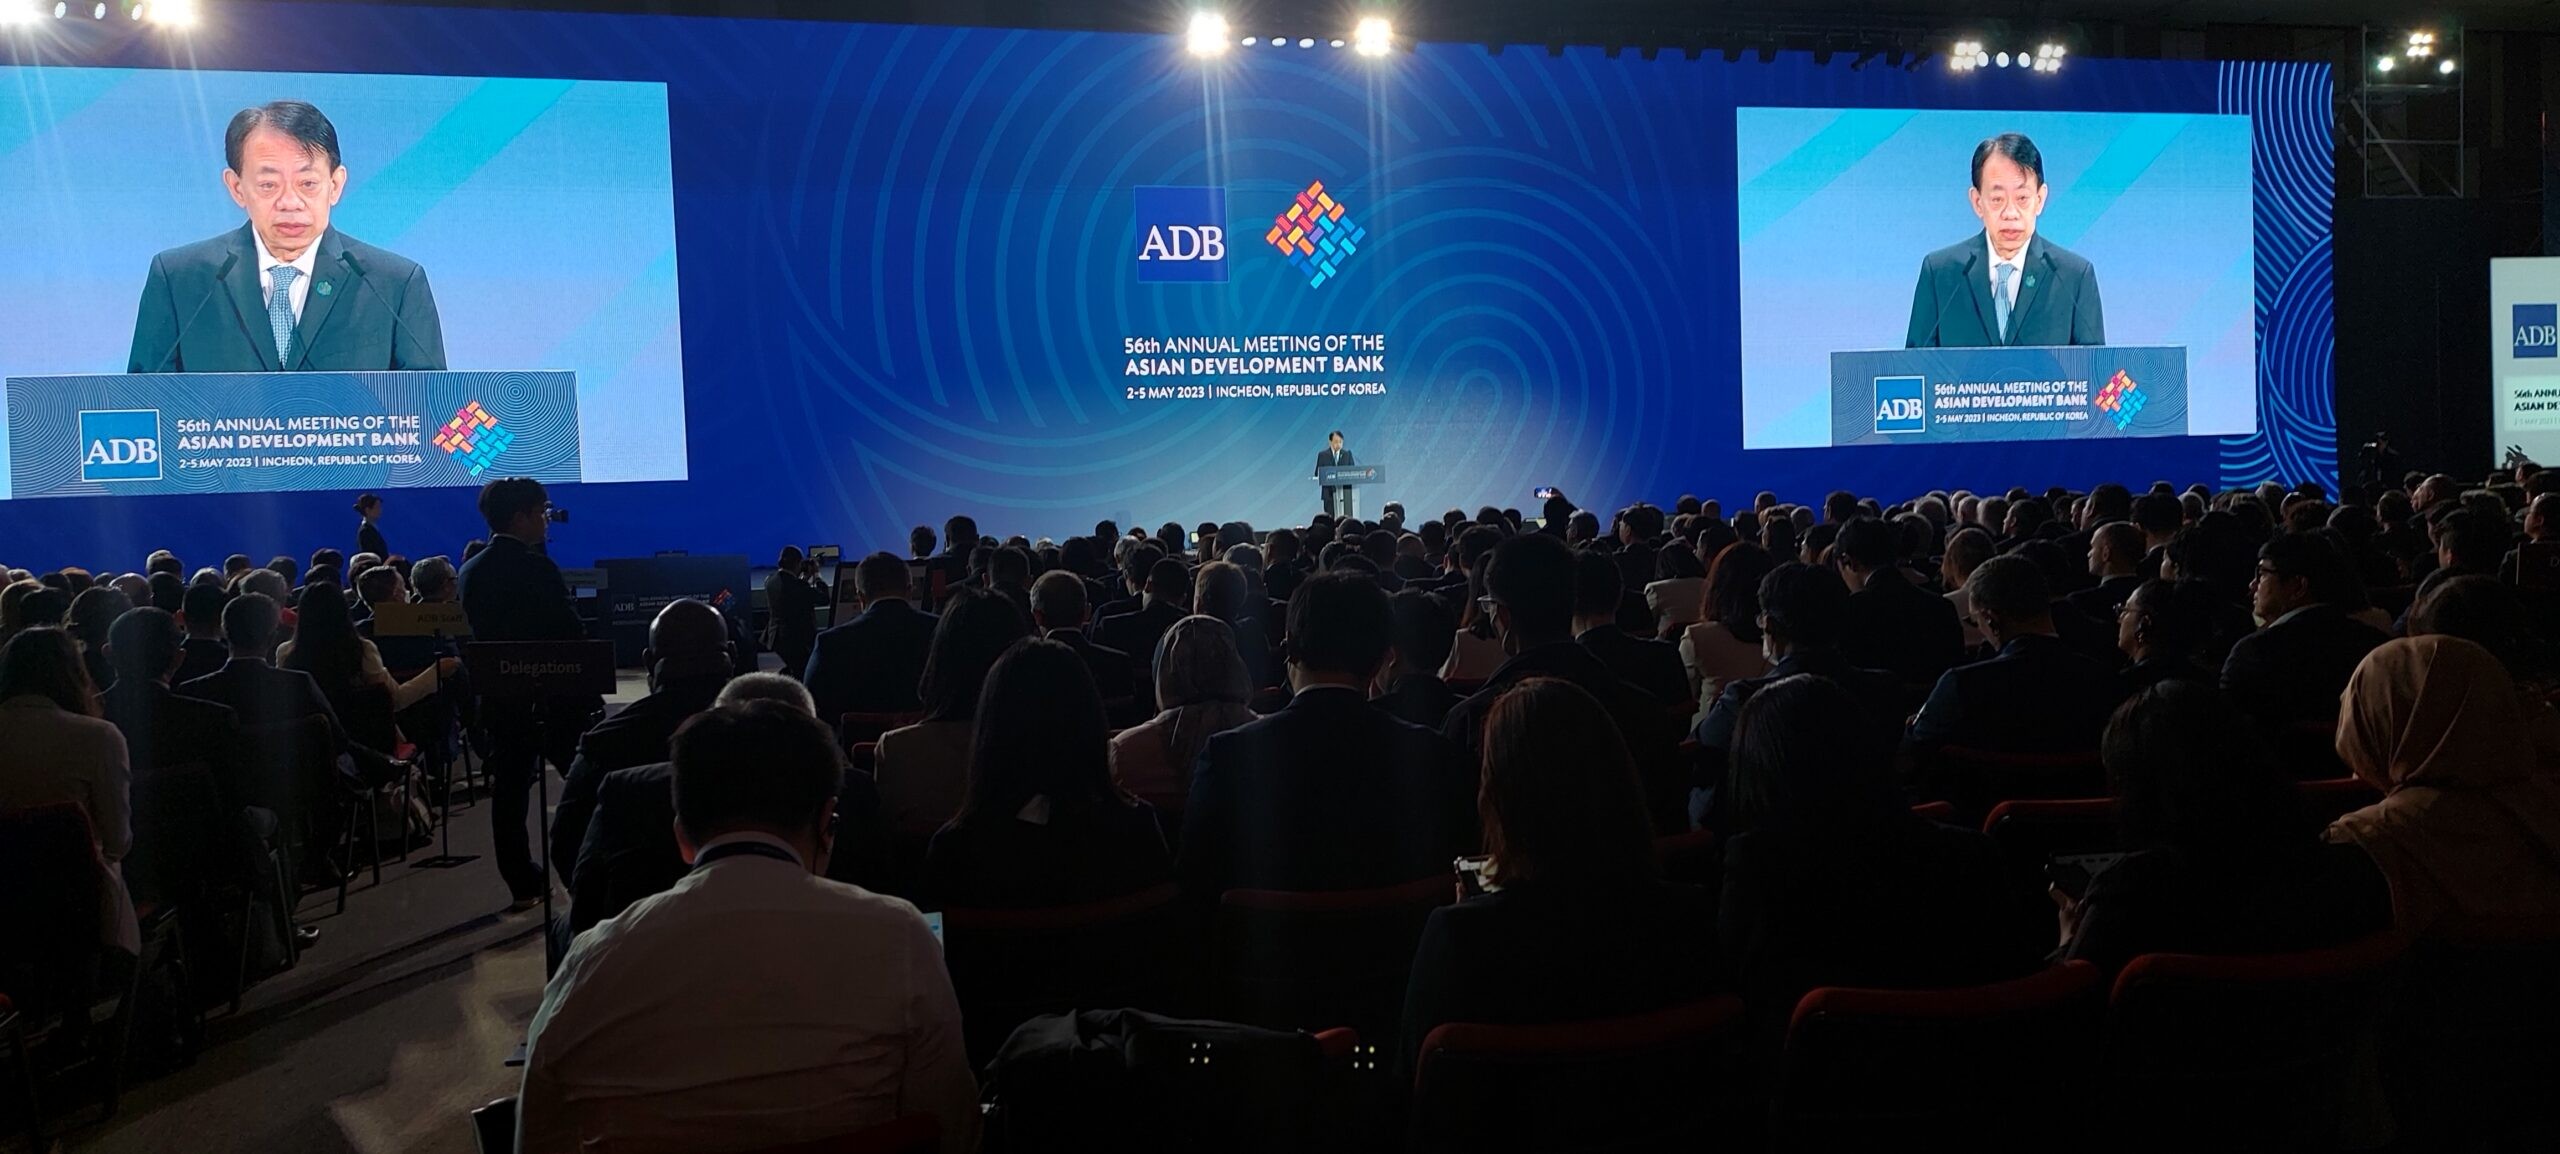 Tài chính - Ngân hàng - ADB và Thụy Sĩ hỗ trợ Việt Nam cải thiện tiếp cận dịch vụ tài chính